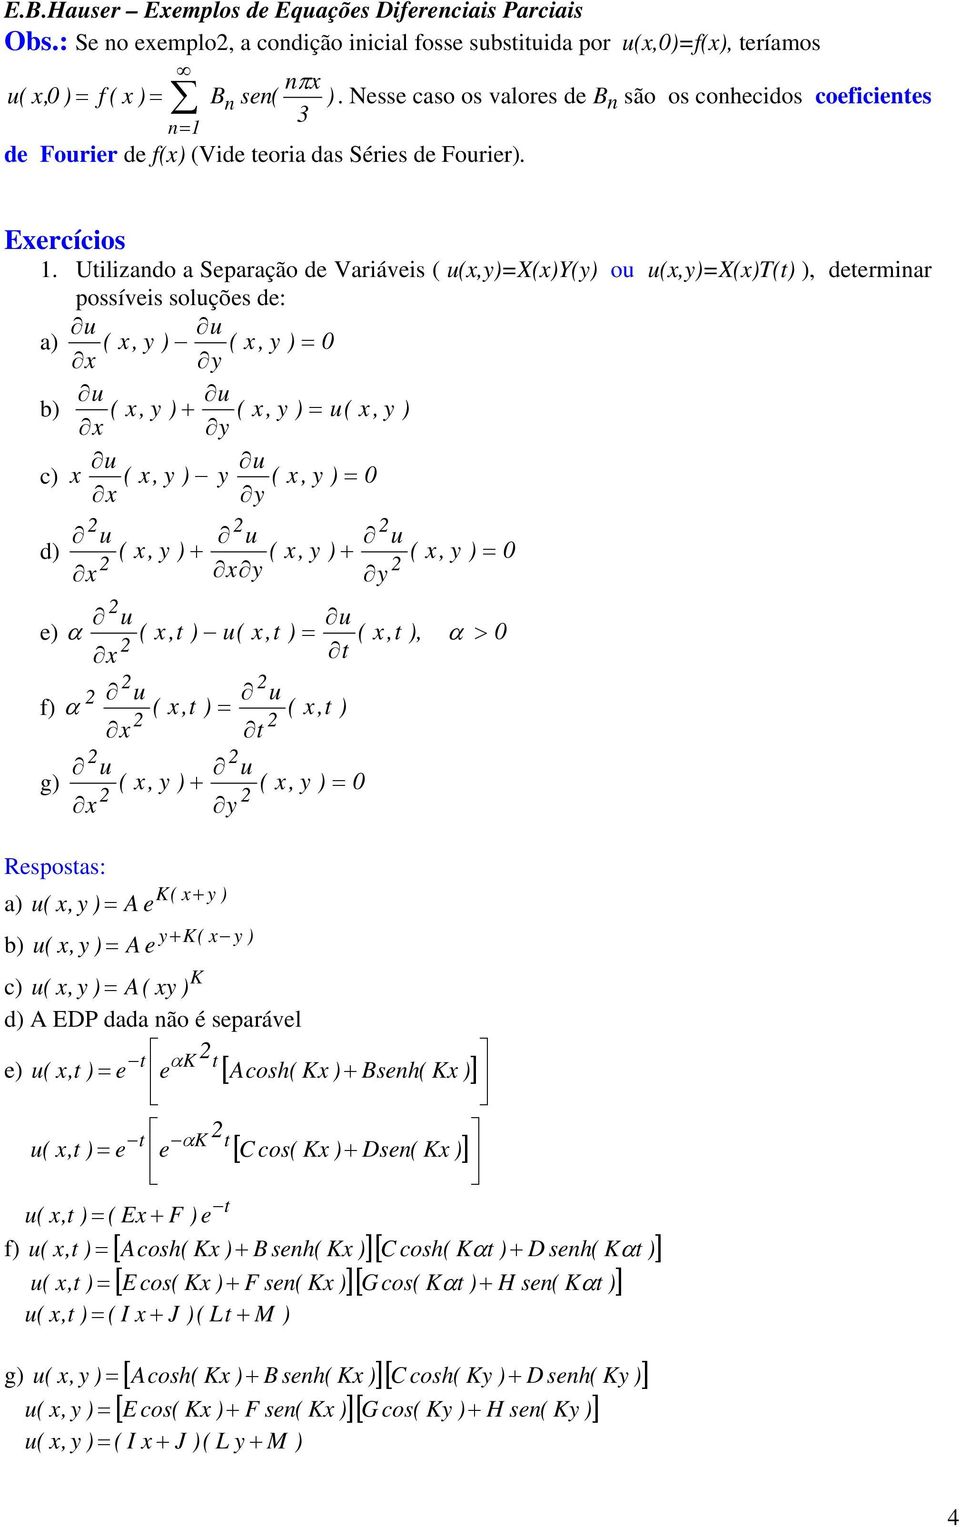 Utilizando a Separação de Variáveis ( u(x,y)=x(x)y(y) ou u(x,y)=x(x)t(t) ), determinar possíveis soluções de: a) ( x, y ) ( x, y ) = 0 b) ( x, y ) + ( x, y ) = u( x, y ) c) x ( x, y ) y ( x, y ) = 0